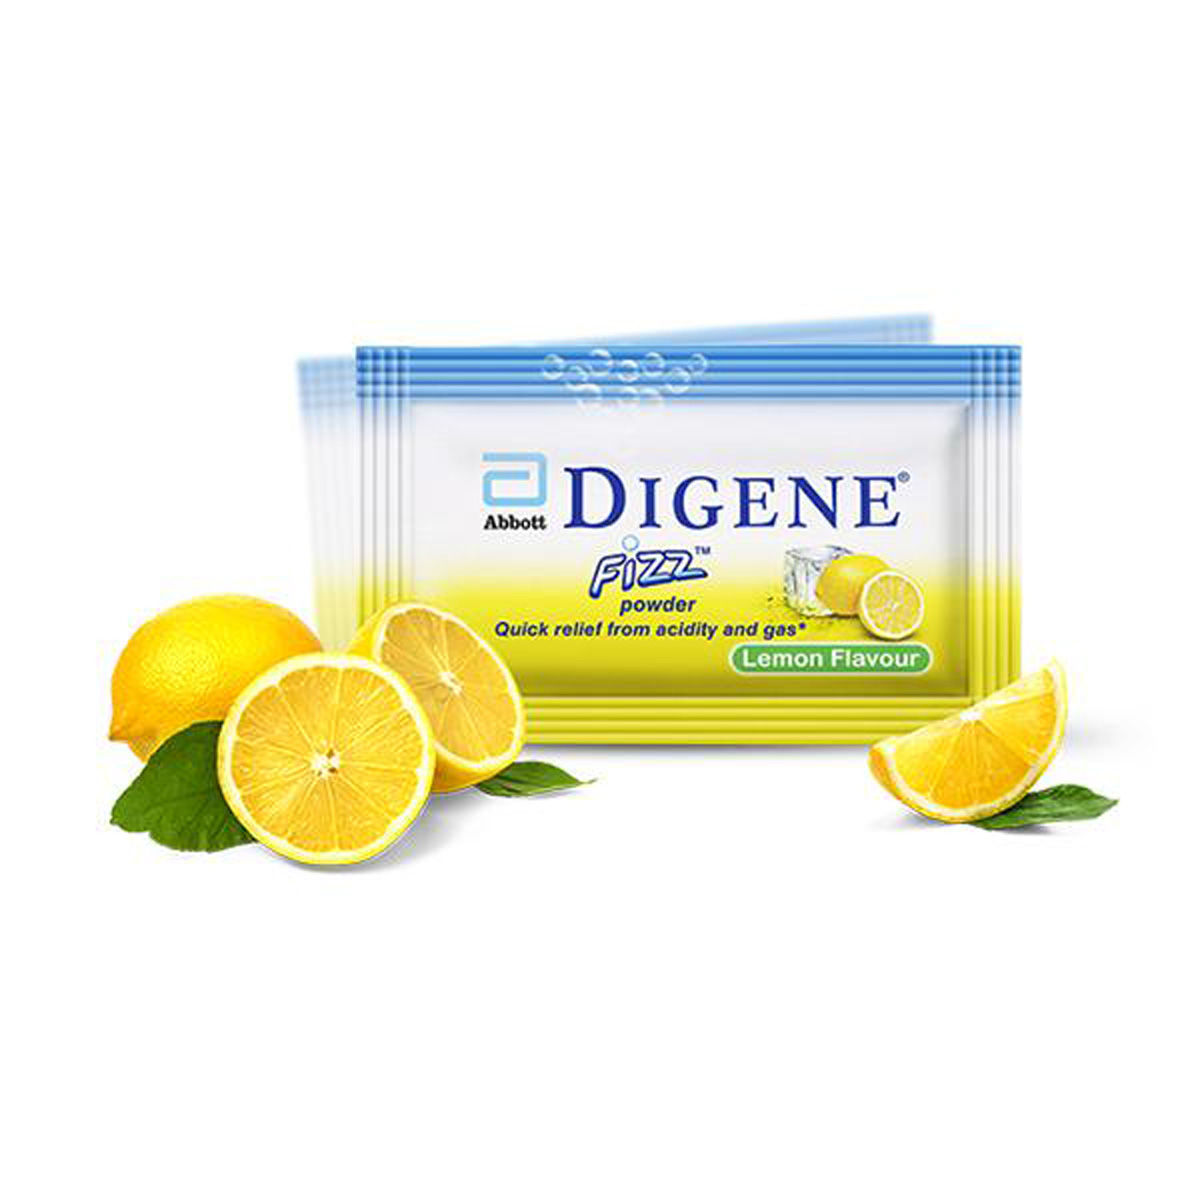 Buy Digene Fizz Lemon Flavoured Powder, 5 gm Online